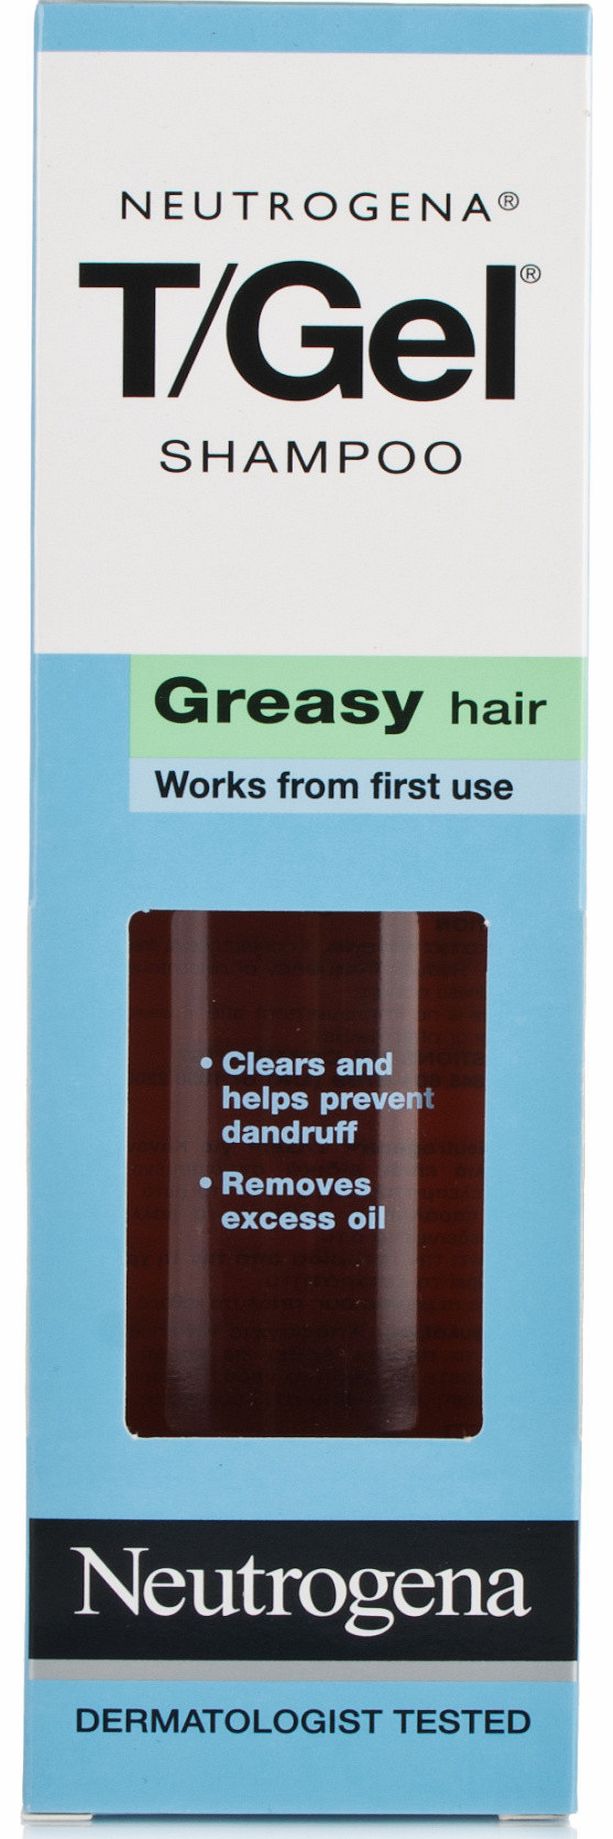 T/Gel Dandruff Shampoo For Greasy Hair